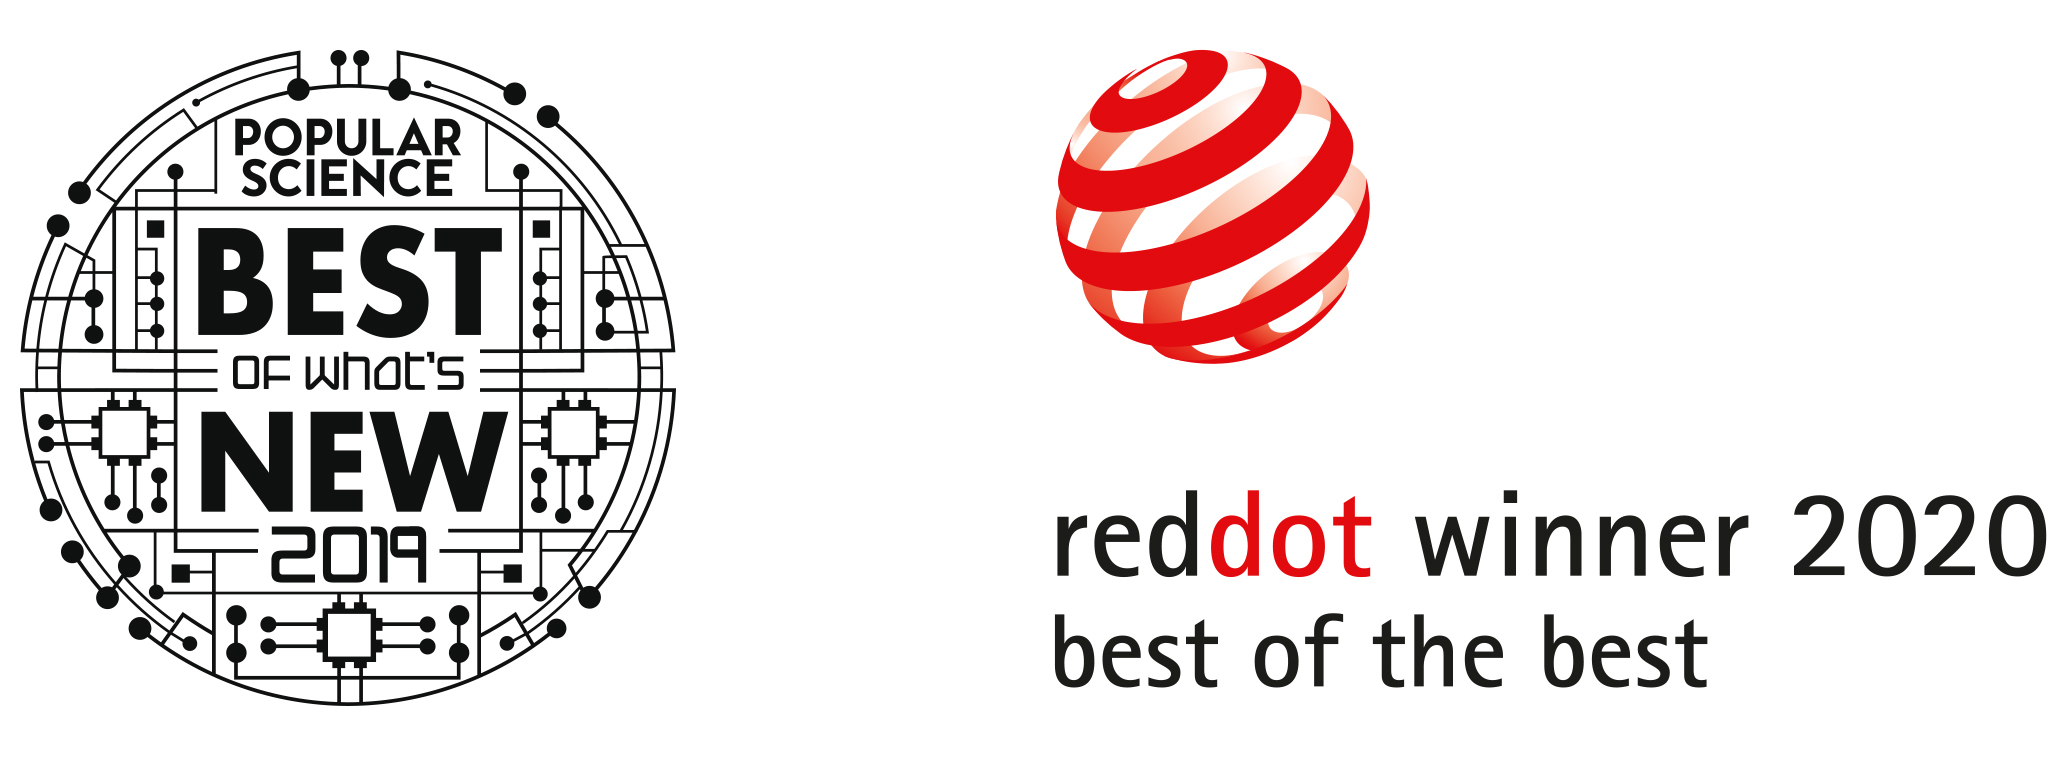 Logotipo de Best of What’s New 2019 de Popular Science y logotipo de Best of the Best de Red Dot Winner 2020